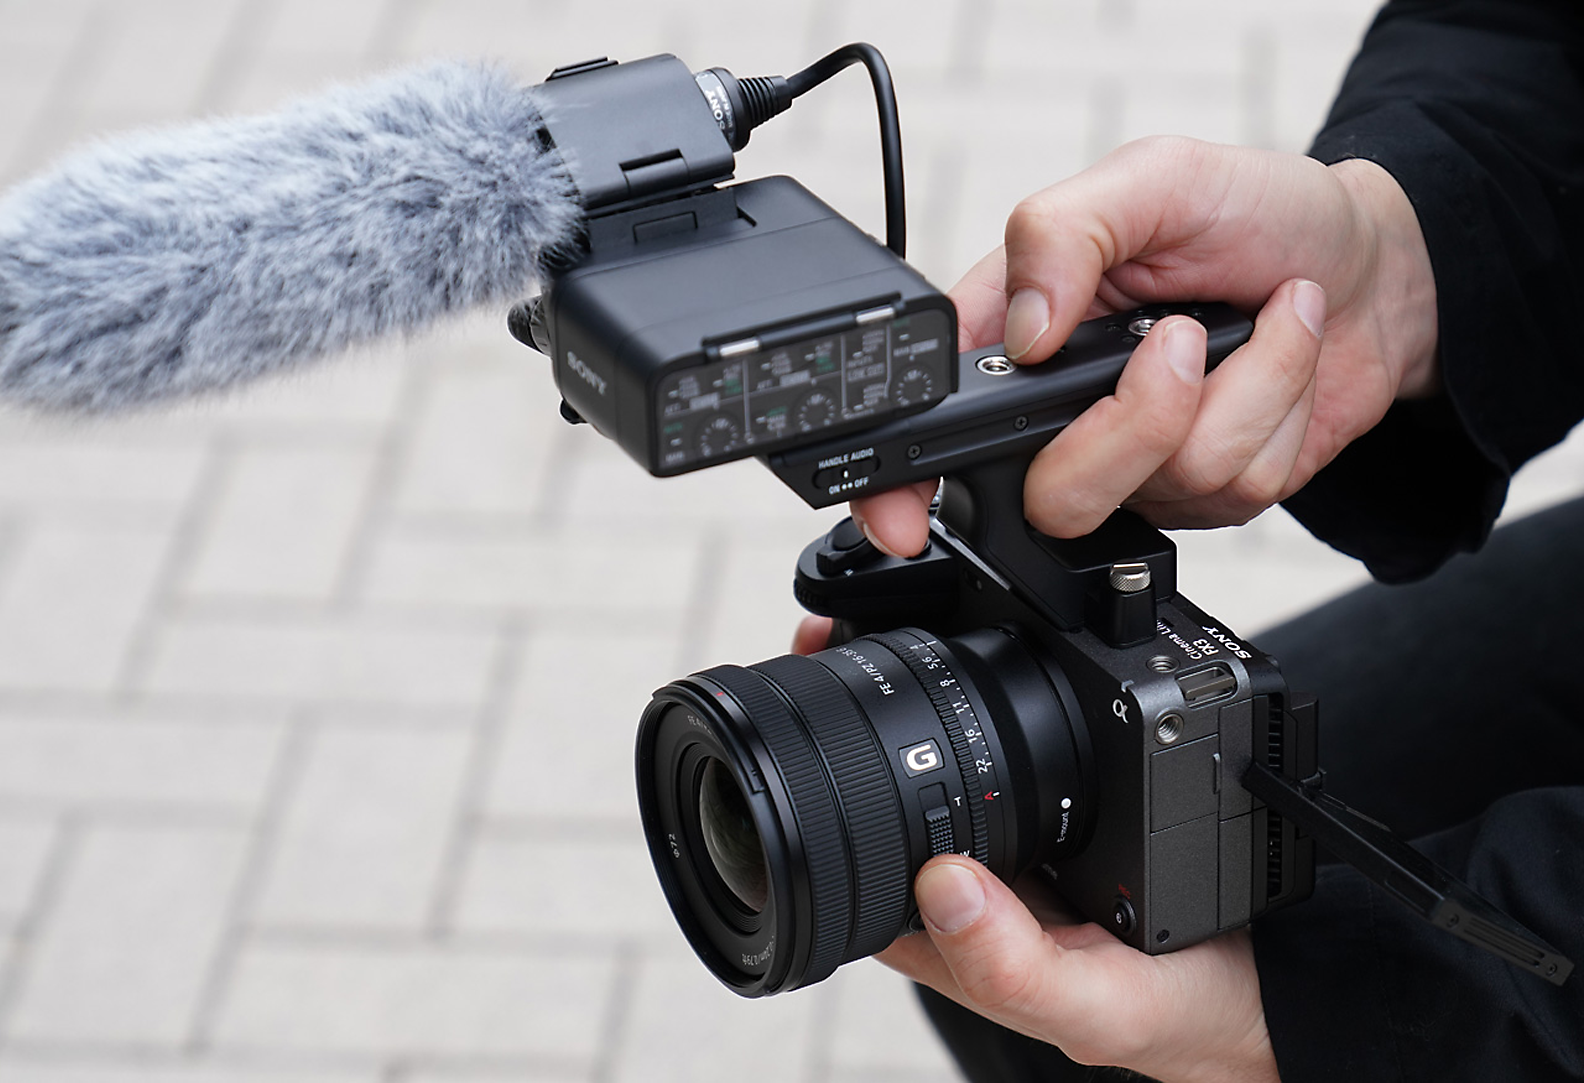 Posnetek z izdelkom SELP1635G s s fotoaparatom FX3, povezanim z mikrofonom ECM-XM1